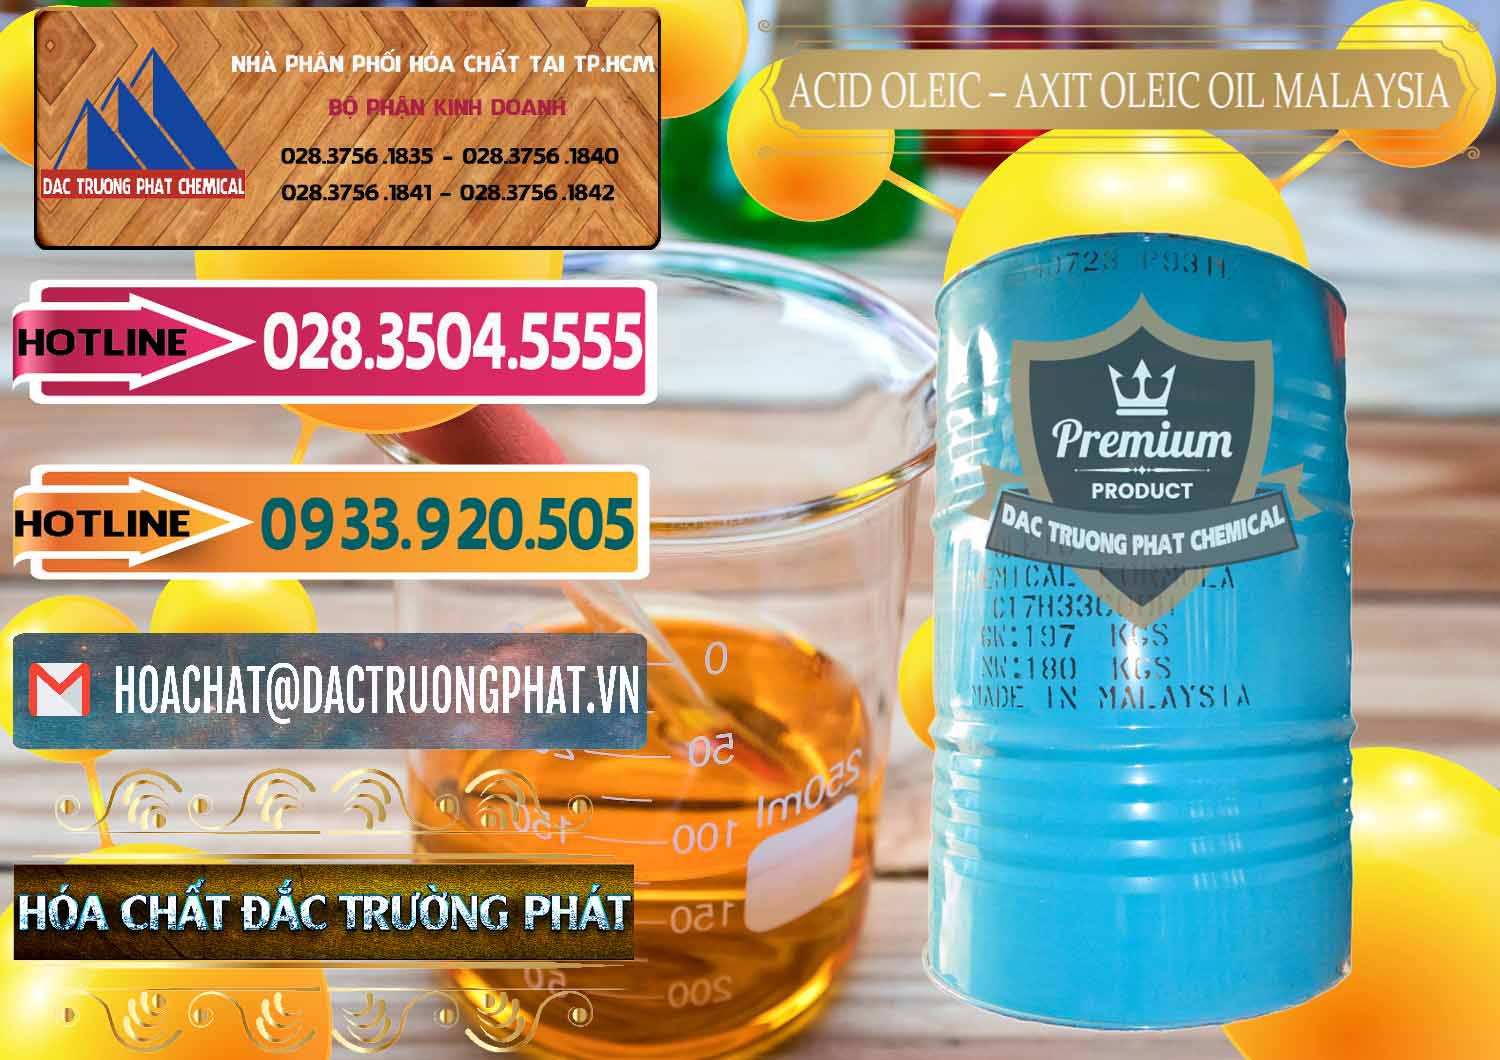 Chuyên bán ( phân phối ) Acid Oleic – Axit Oleic Oil Malaysia - 0013 - Cty cung cấp - phân phối hóa chất tại TP.HCM - dactruongphat.vn